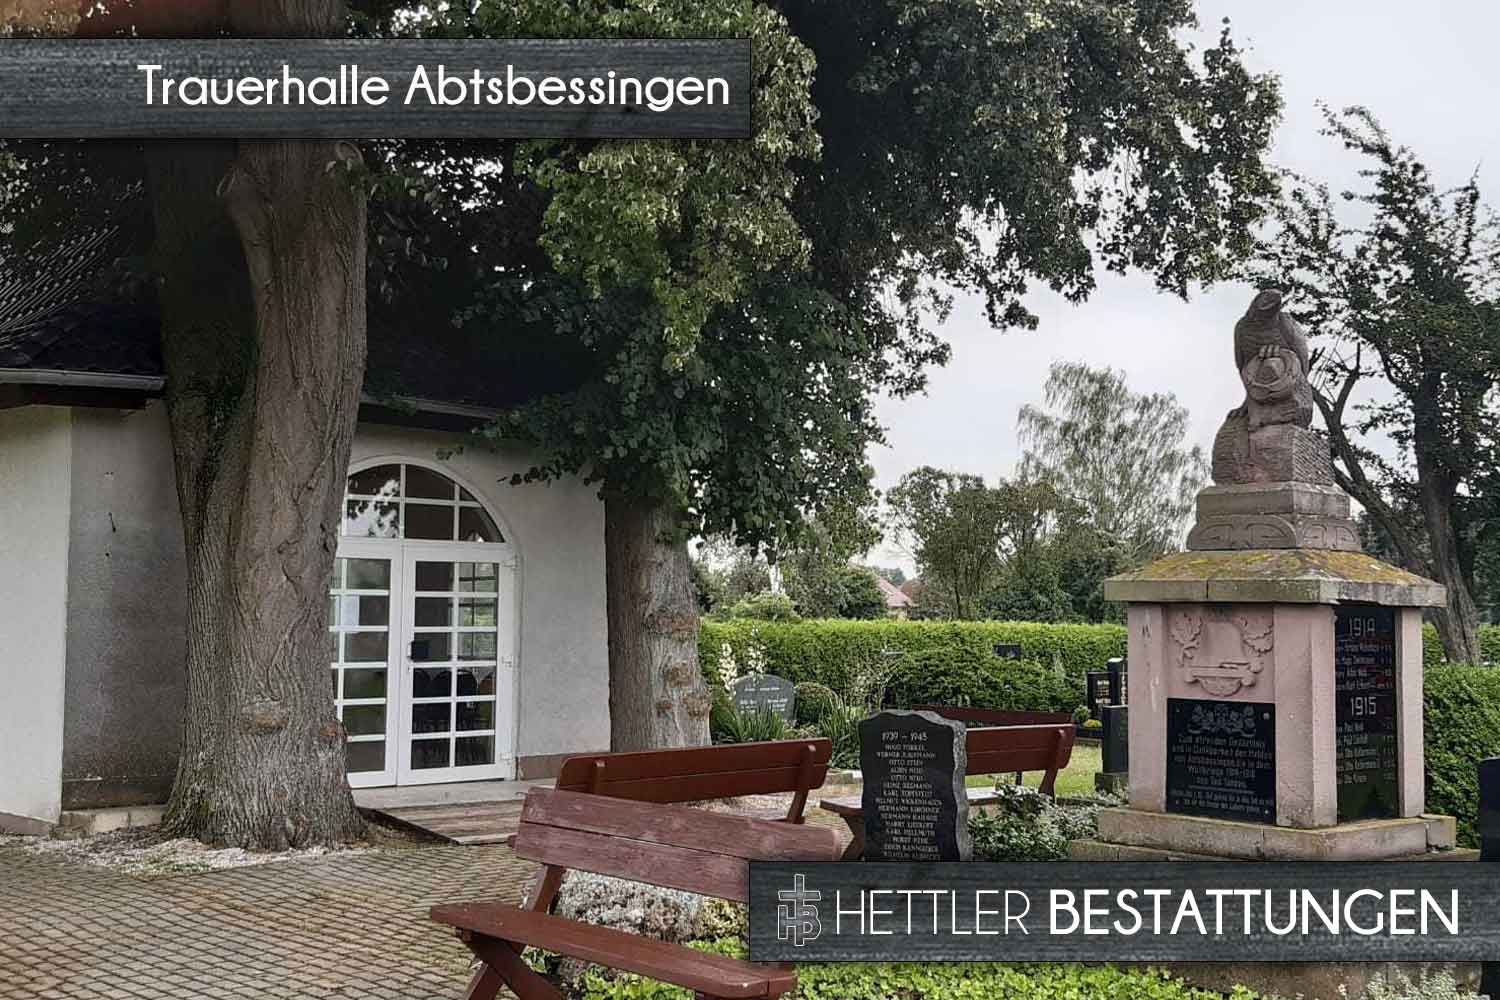 Trauerhalle und Friedhof in Abtsbessingen. Ihr Ort des Abschieds mit Hettler Bestattungen.